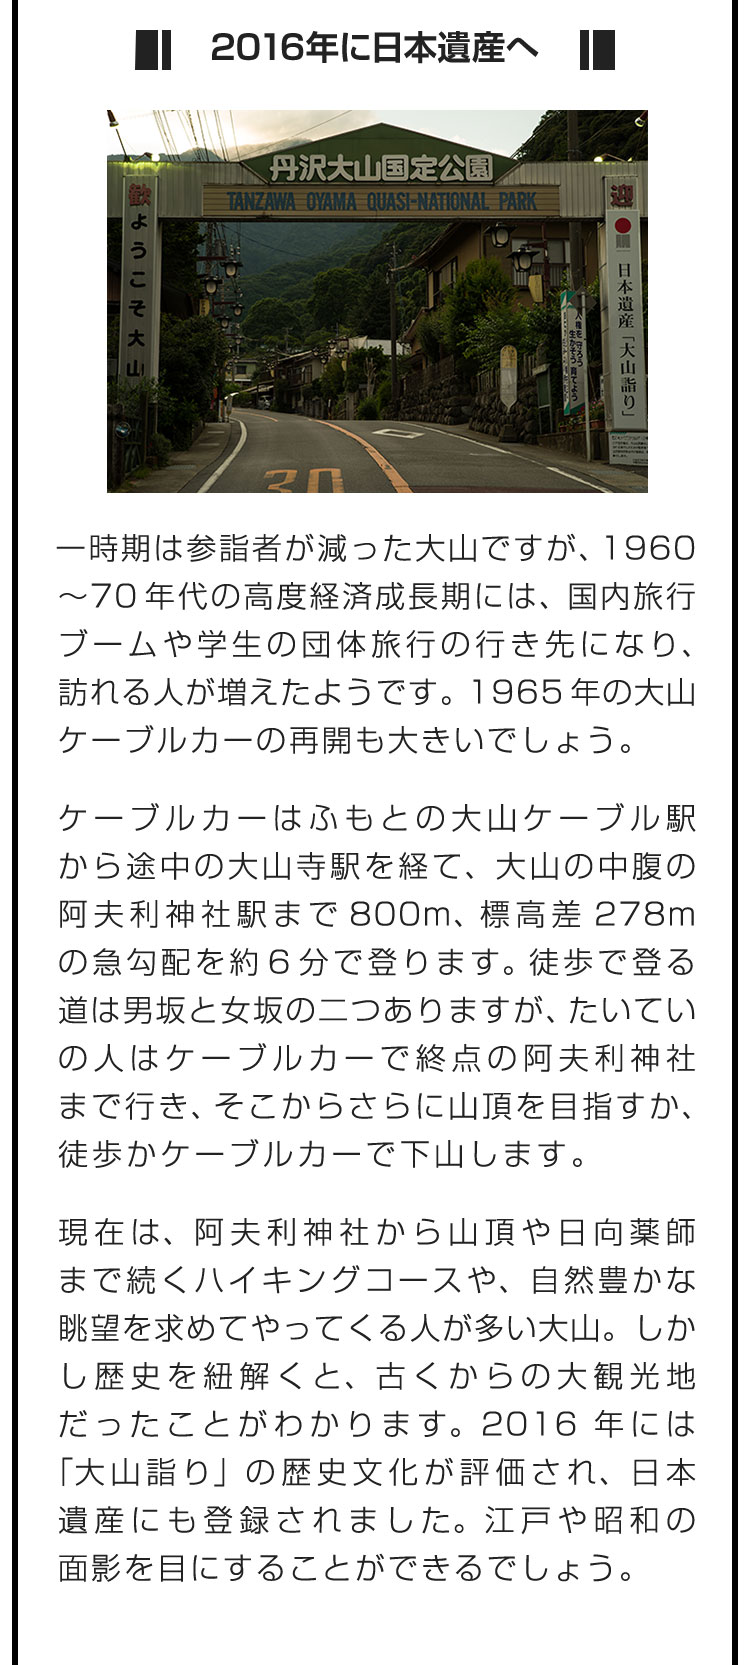 ■2016年に日本遺産へ■一時期は参詣者が減った大山ですが、1960〜70年代の高度経済成長期には、国内旅行ブームや学生の団体旅行の行き先になり、訪れる人が増えたようです。1965年の大山ケーブルカーの再開も大きいでしょう。　ケーブルカーはふもとの大山ケーブル駅から途中の大山寺駅を経て、大山の中腹の阿夫利神社駅まで800m、標高差278mの急勾配を約6分で登ります。徒歩で登る道は男坂と女坂の二つありますが、たいていの人はケーブルカーで終点の阿夫利神社まで行き、そこからさらに山頂を目指すか、徒歩かケーブルカーで下山します。　現在は、阿夫利神社から山頂や日向薬師まで続くハイキングコースや、自然豊かな眺望を求めてやってくる人が多い大山。しかし歴史を紐解くと、古くからの大観光地だったことがわかります。2016年には「大山詣り」の歴史文化が評価され、日本遺産にも登録されました。江戸や昭和の面影を目にすることができるでしょう。